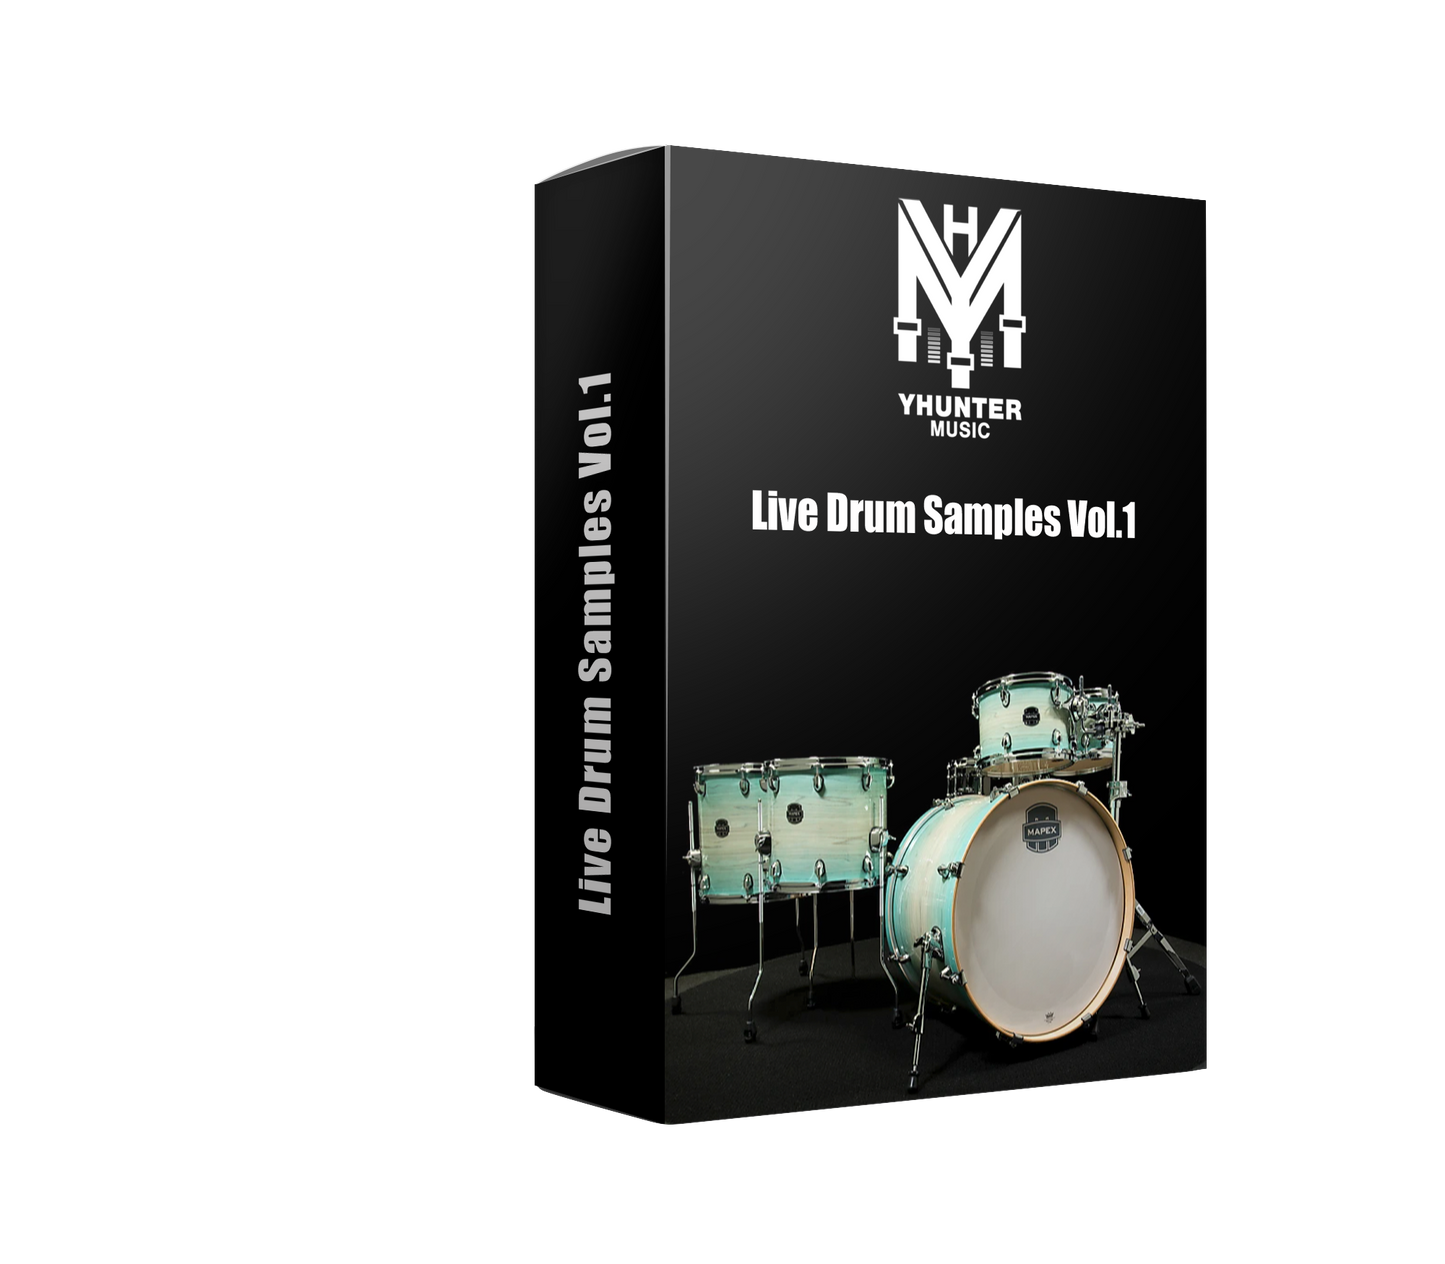 Live Drum Samples Vol.1